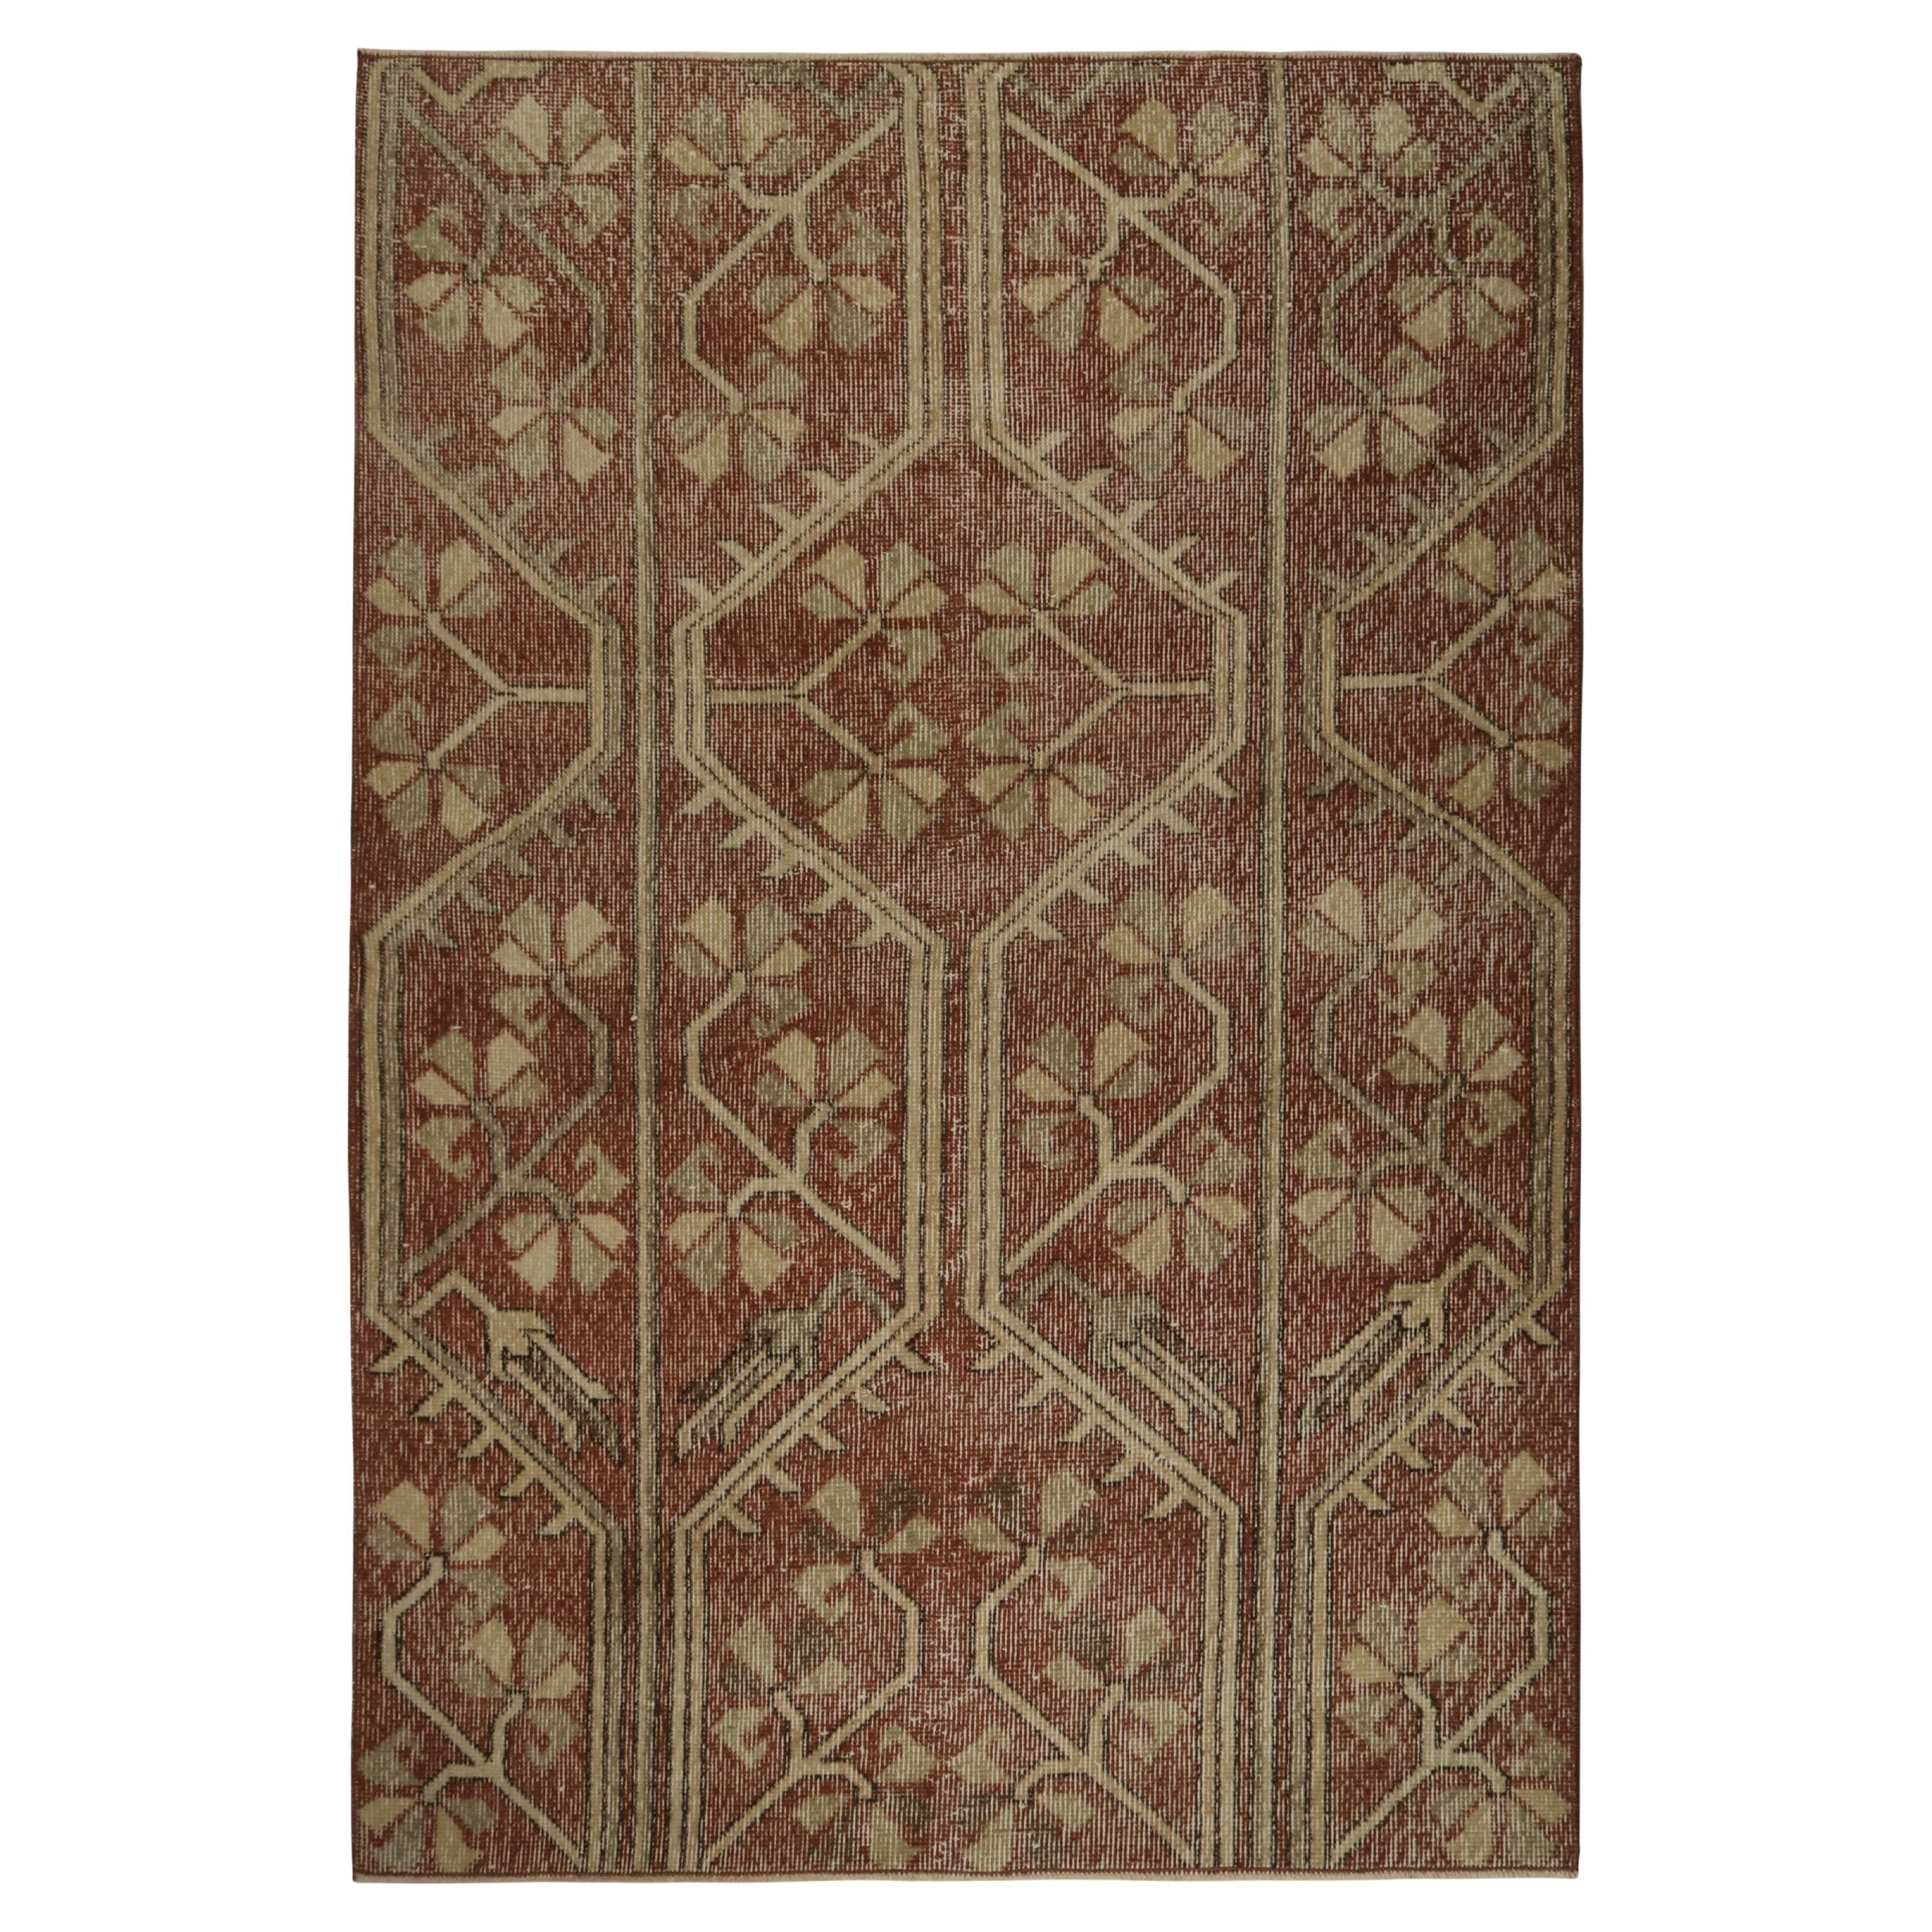 Vintage Zeki Müren Teppich in Braun mit Beige-Muster, von Rug & Kilim